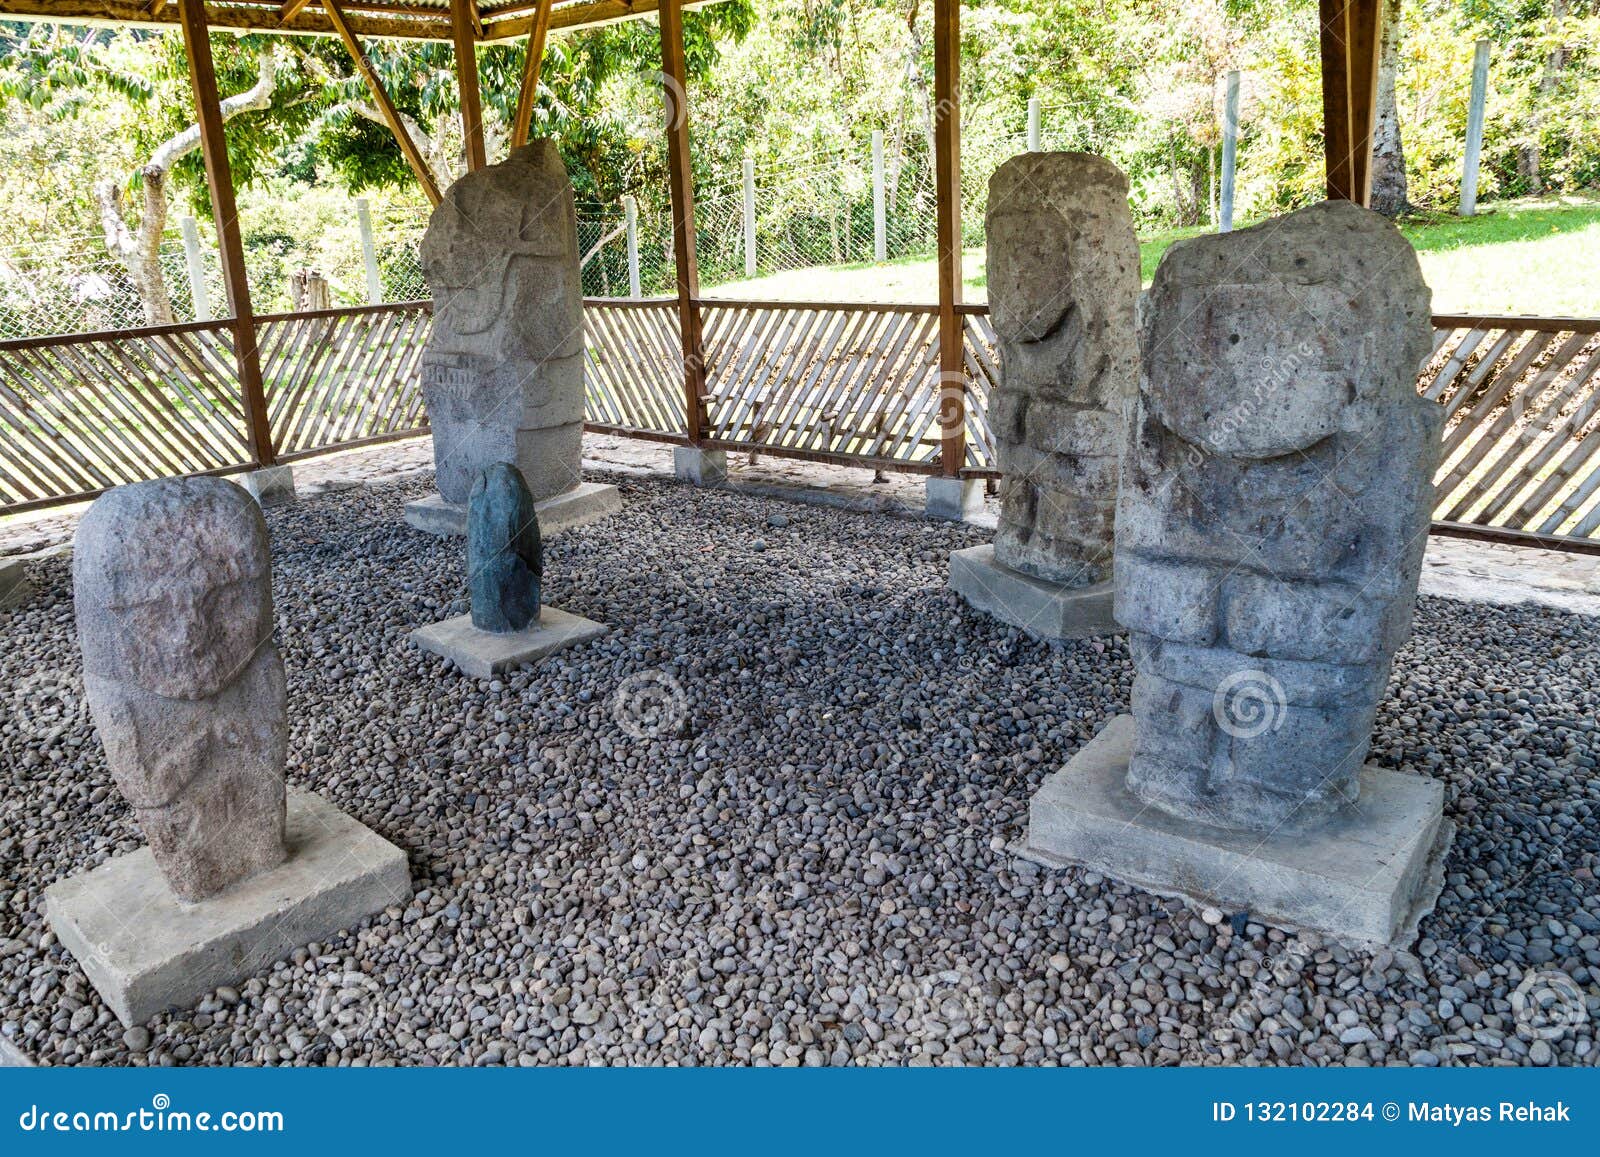 ancient statues at el tablon site in tierradentro